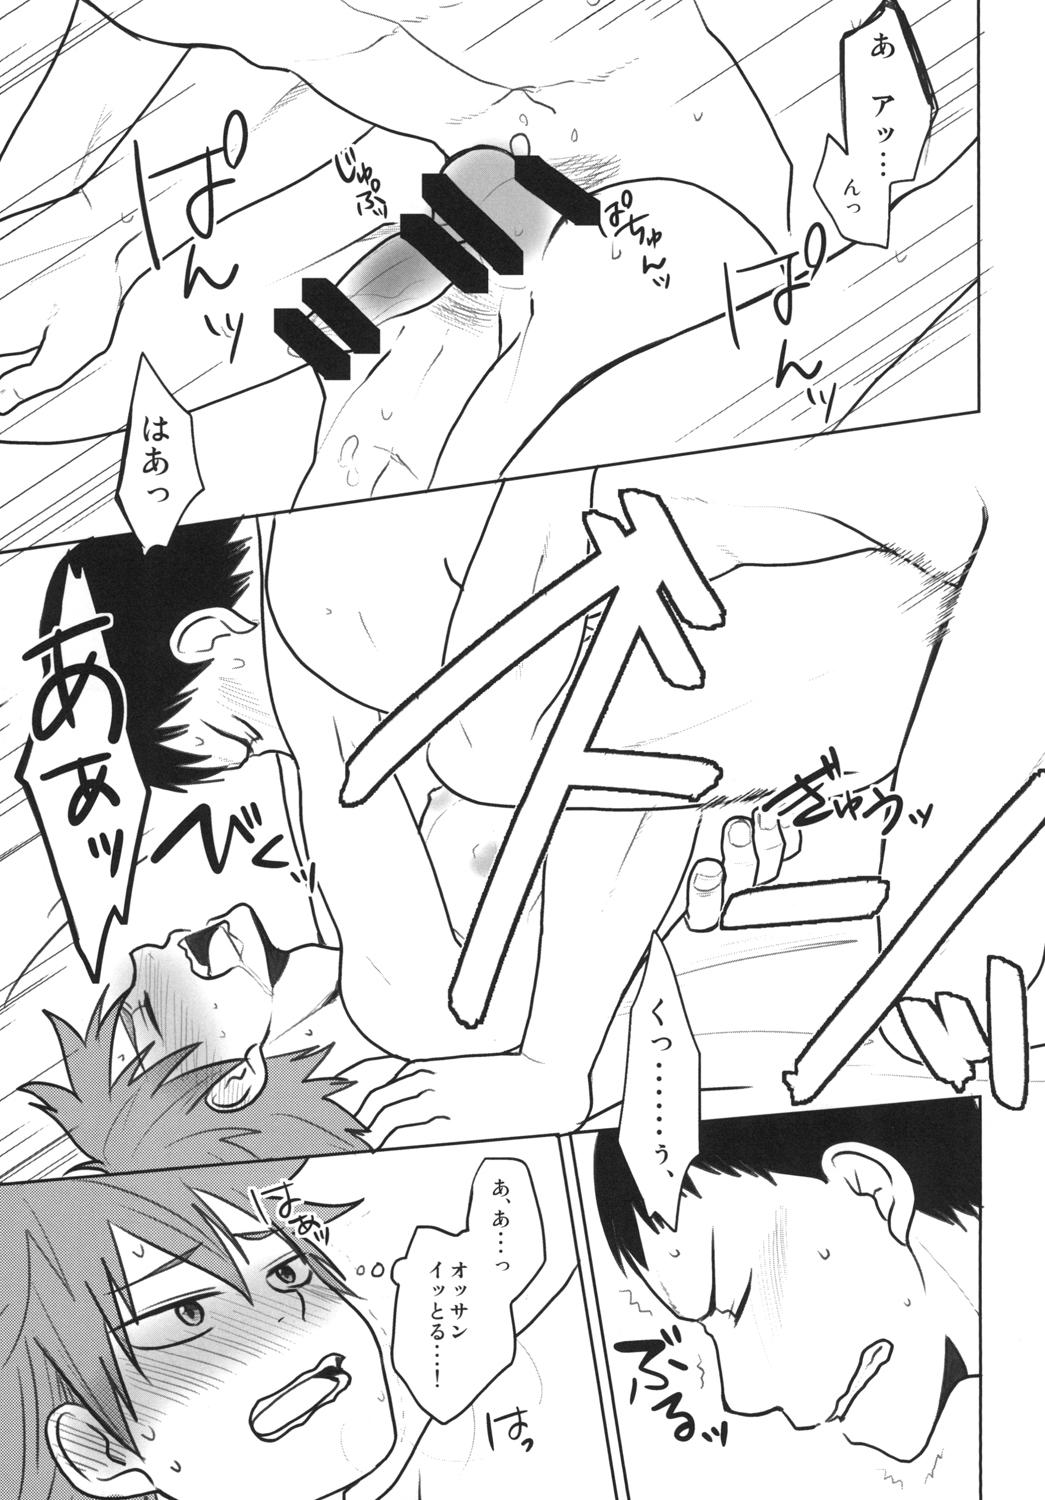 Mum Haitteru!! - Yowamushi pedal Threesome - Page 5